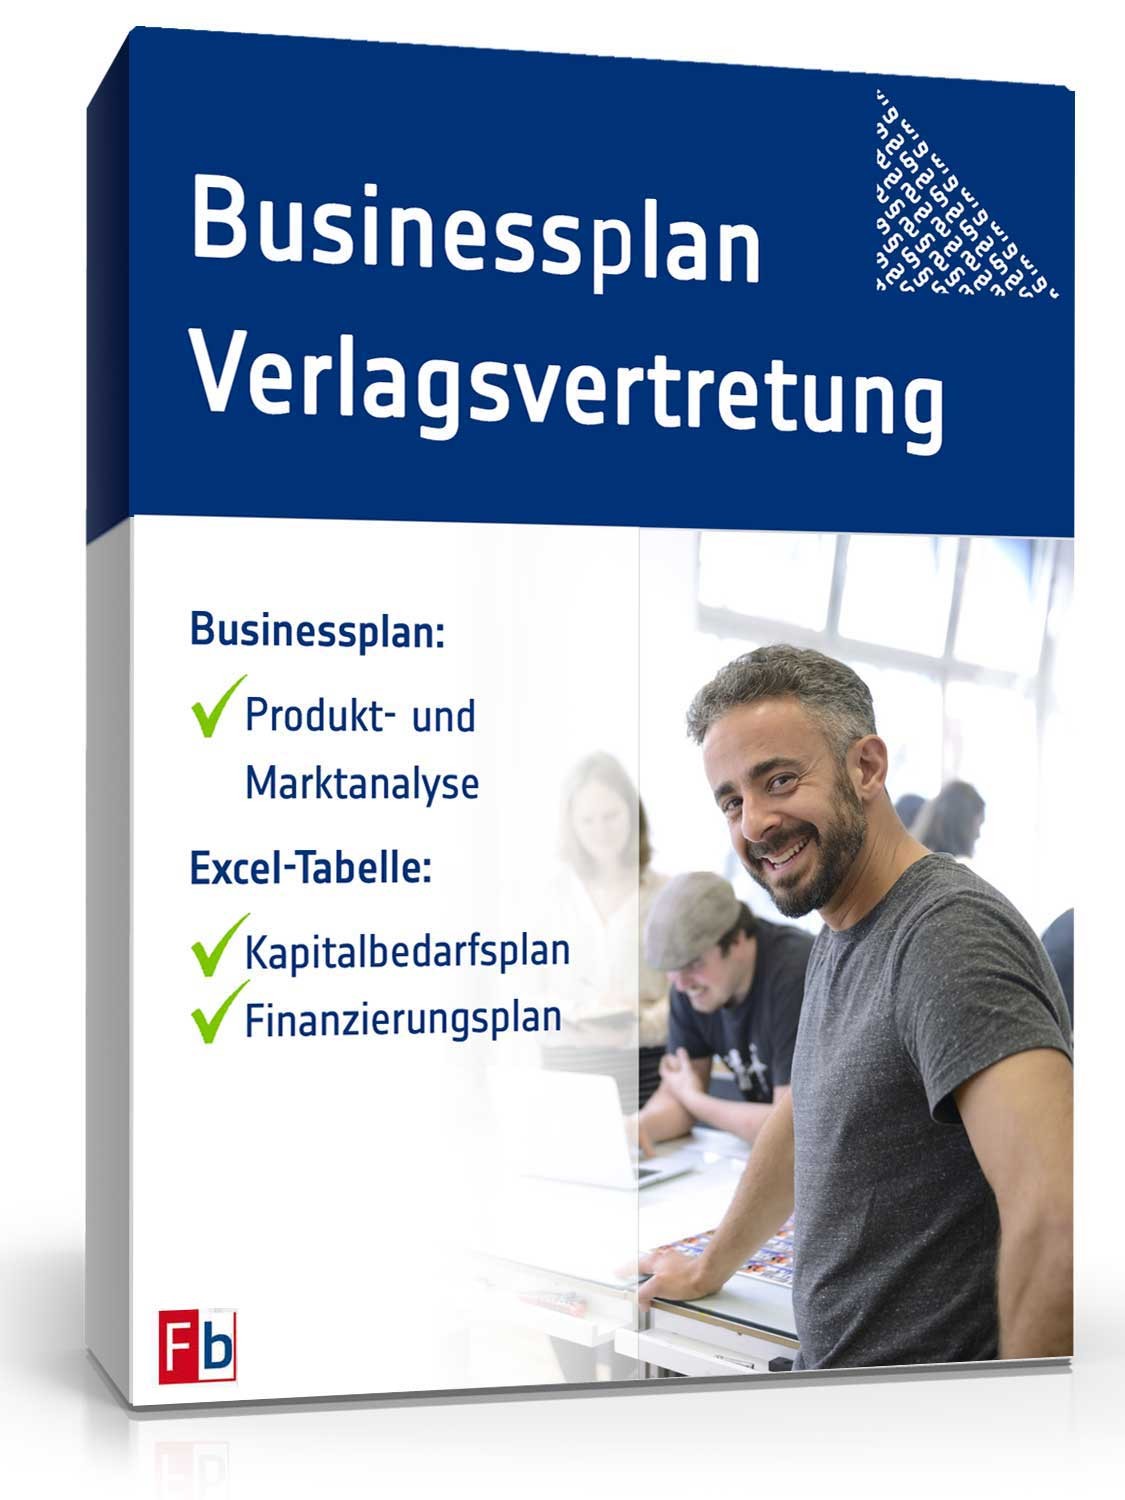 Hauptbild des Produkts: Businessplan Verlagsvertretung